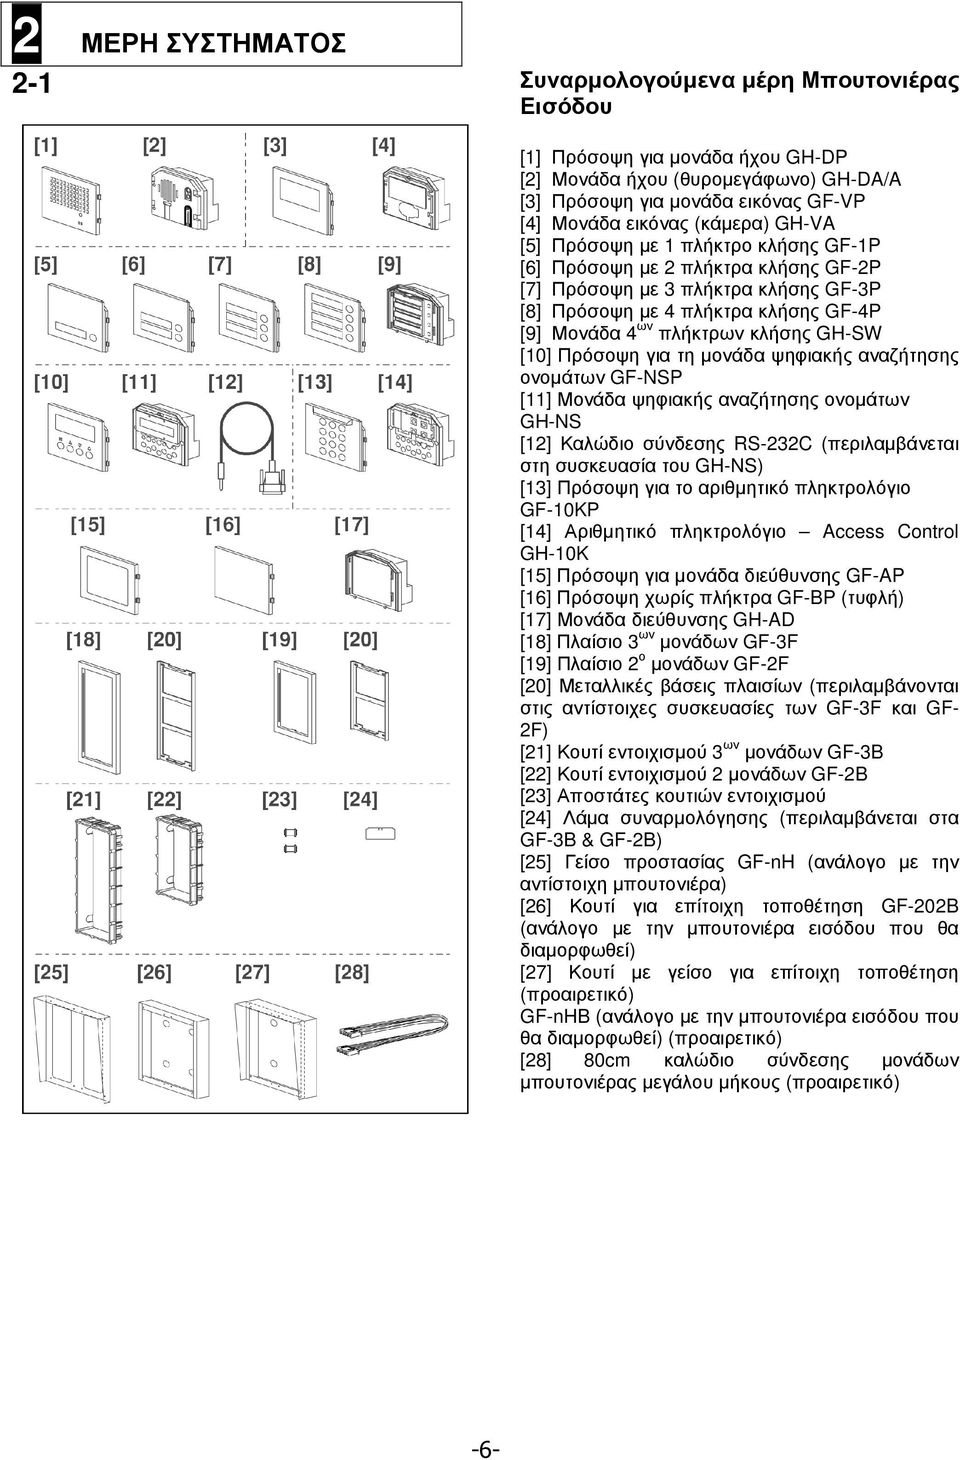 GH-SW [10] Πρόσοψη για τη µονάδα ψηφιακής αναζήτησης ονοµάτων GF-NSP [11] Μονάδα ψηφιακής αναζήτησης ονοµάτων GH-NS [12] Καλώδιο σύνδεσης RS-232C (περιλαµβάνεται στη συσκευασία του GH-NS) [13]